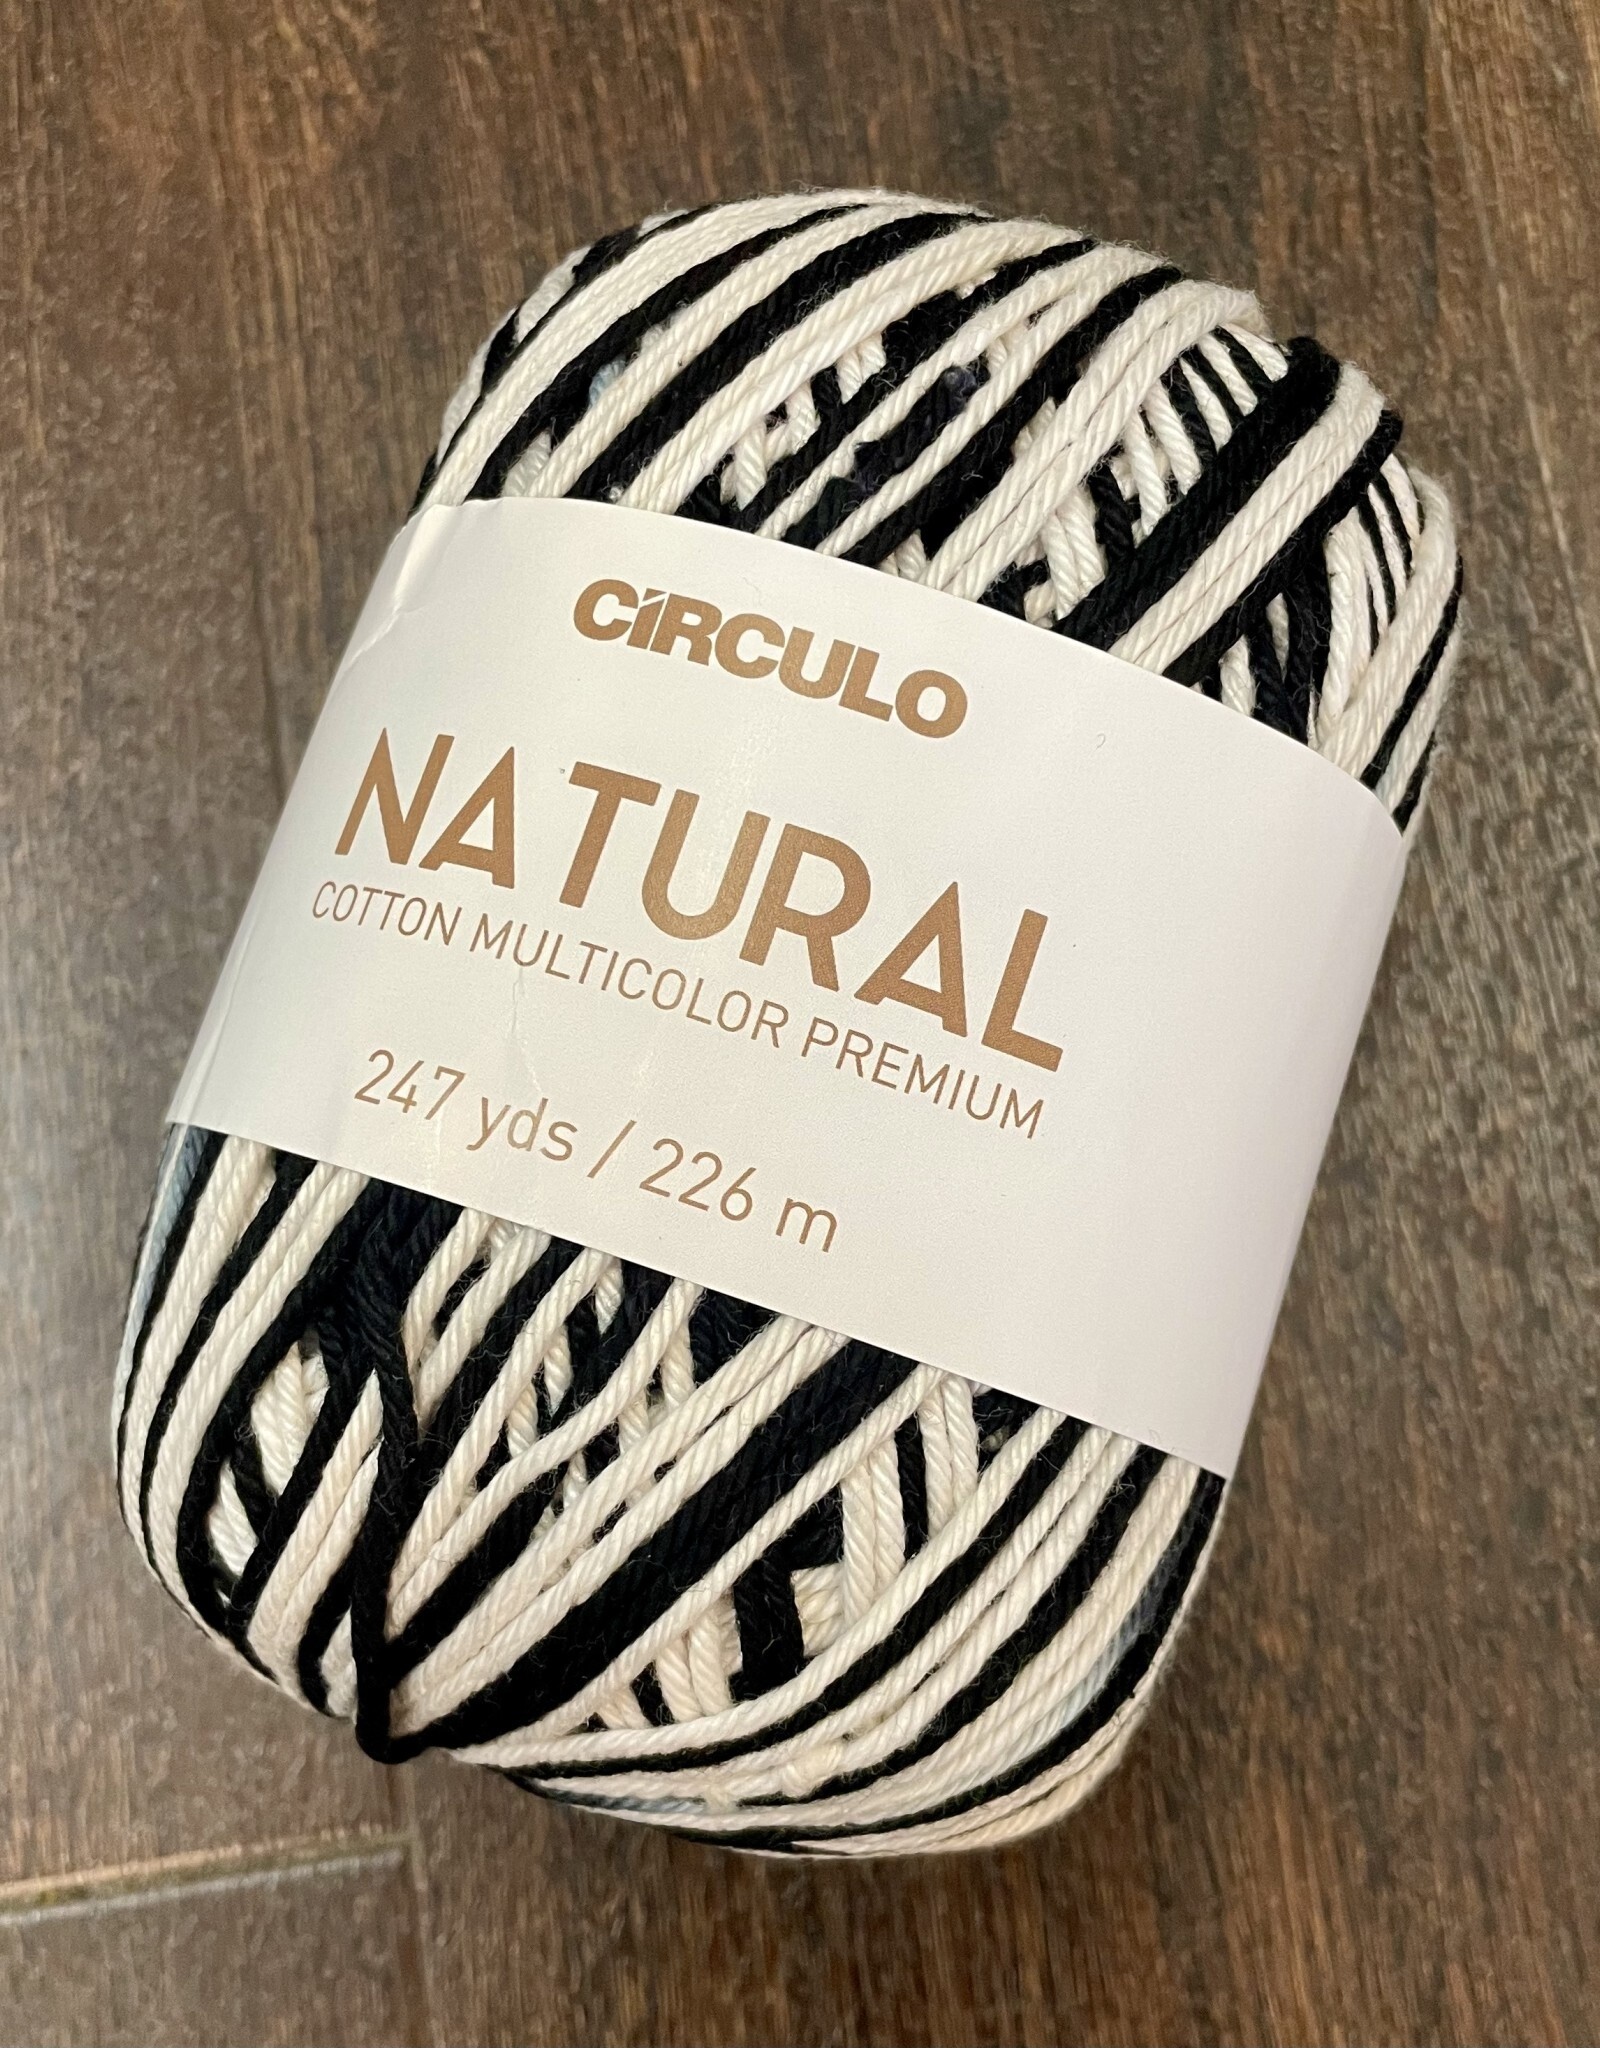 Circulo Natural Cotton Multicolor Premium by Circulo